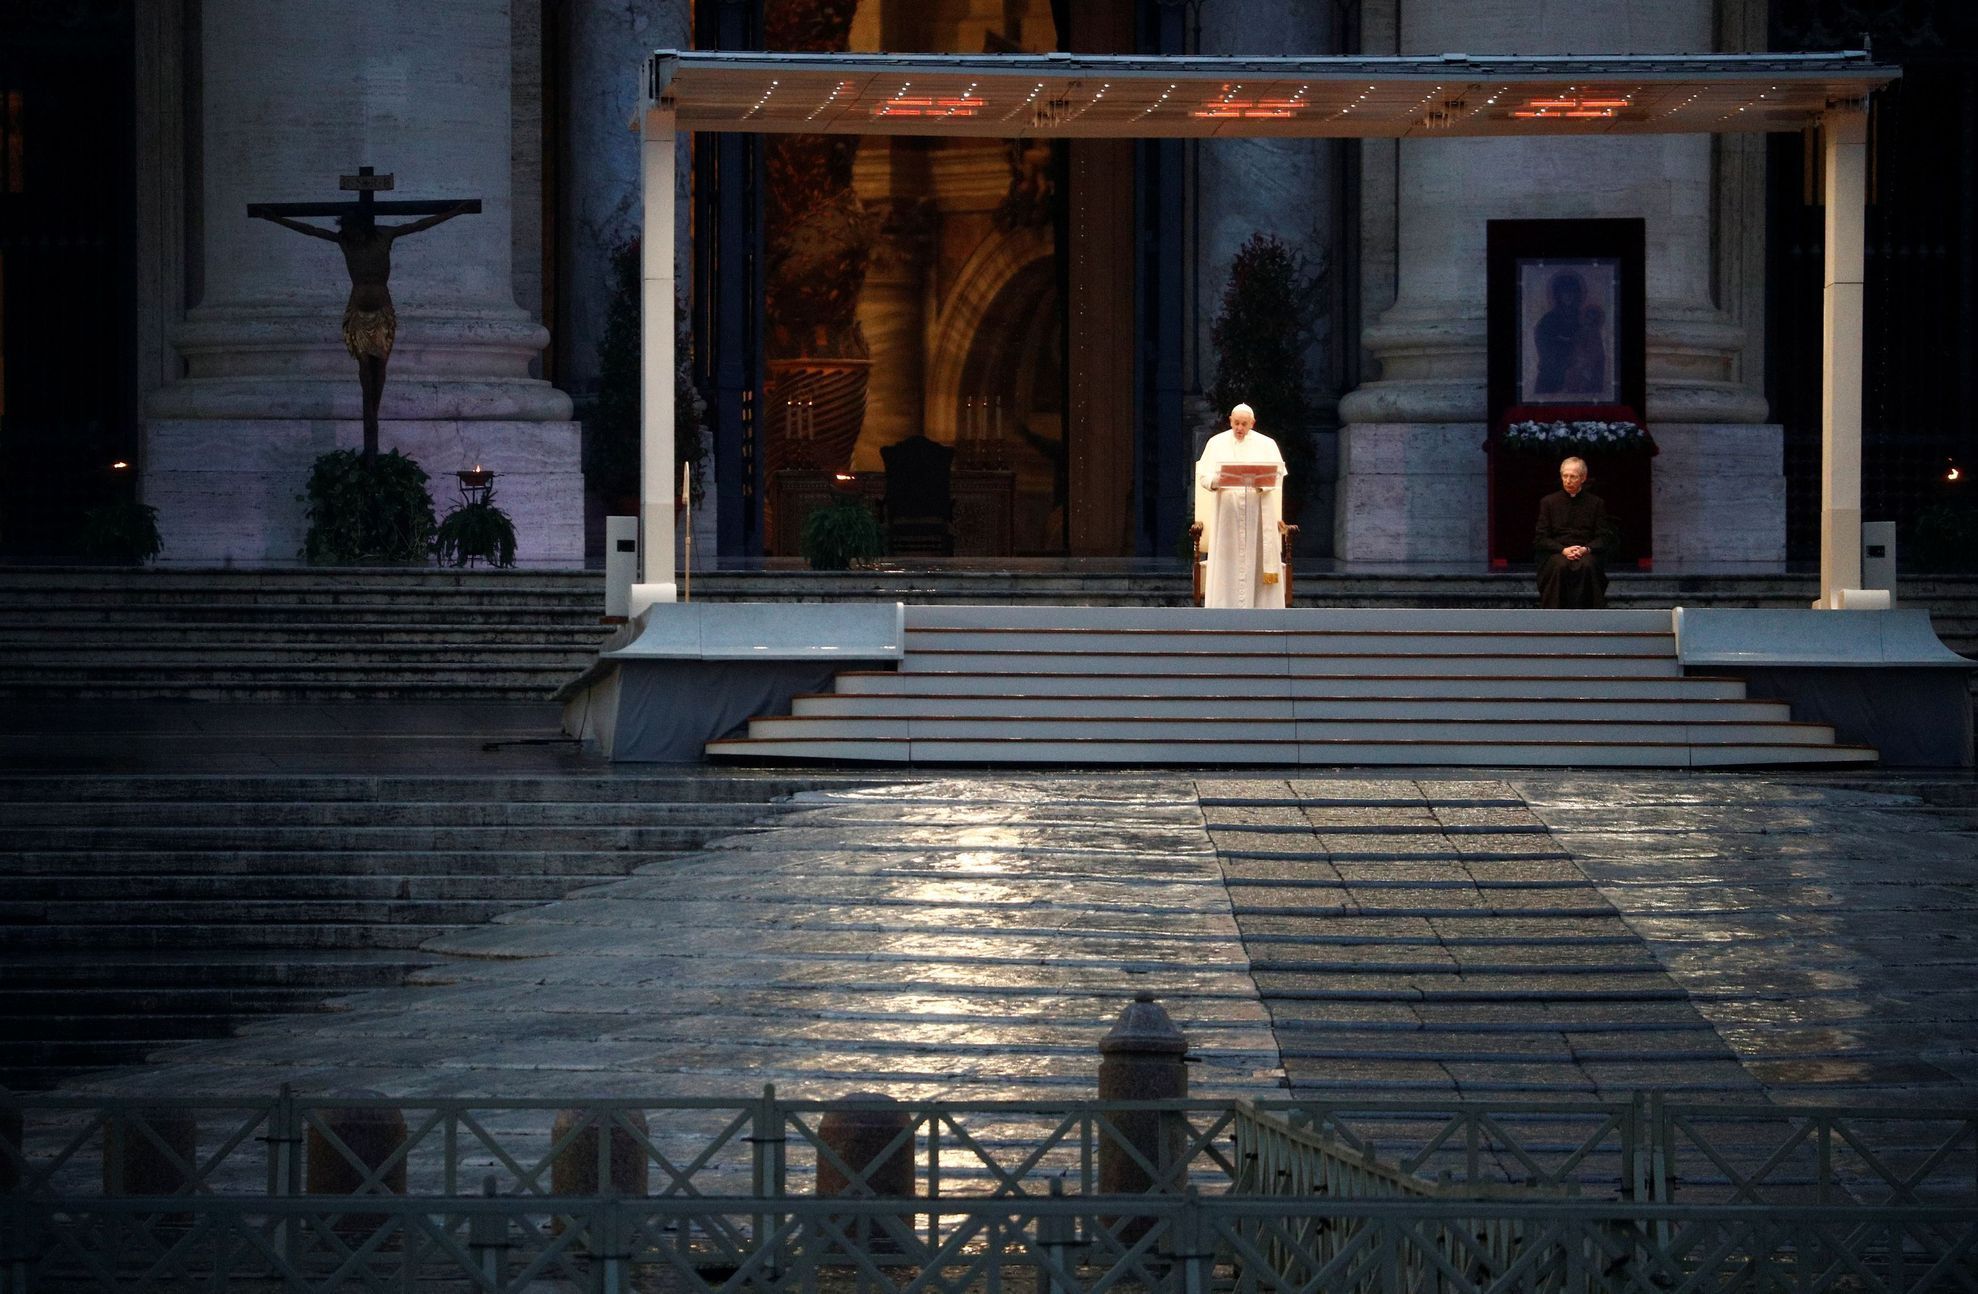 papež František, Vatikán, svatopeterské náměstí, modlitba, požehnání, Urbi et Orbi